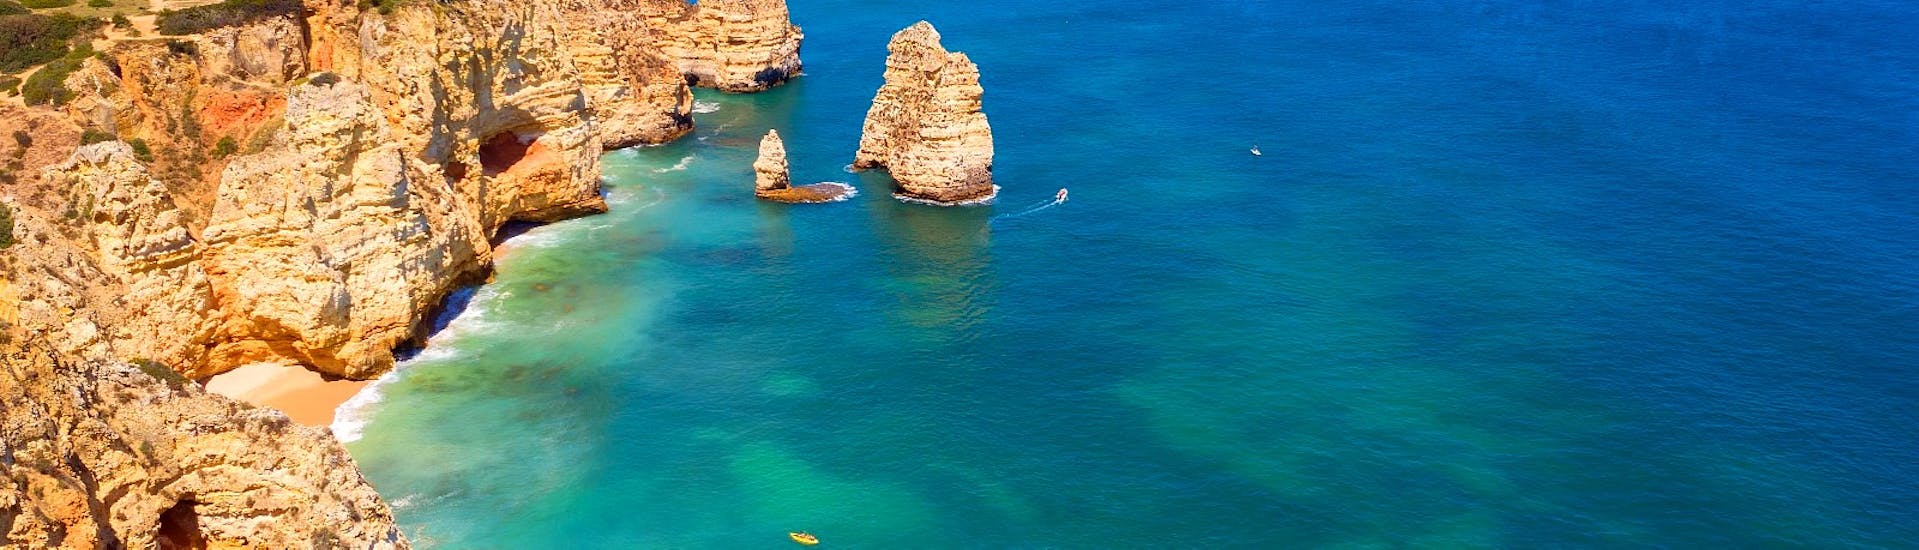 Die schöne Aussicht auf einige Höhlen und Grotten entlang der Küste der Algarve während einer privaten romantischen Bootstour zum Sonnenuntergang ab Lagos mit Funtastik Tours Lagos.